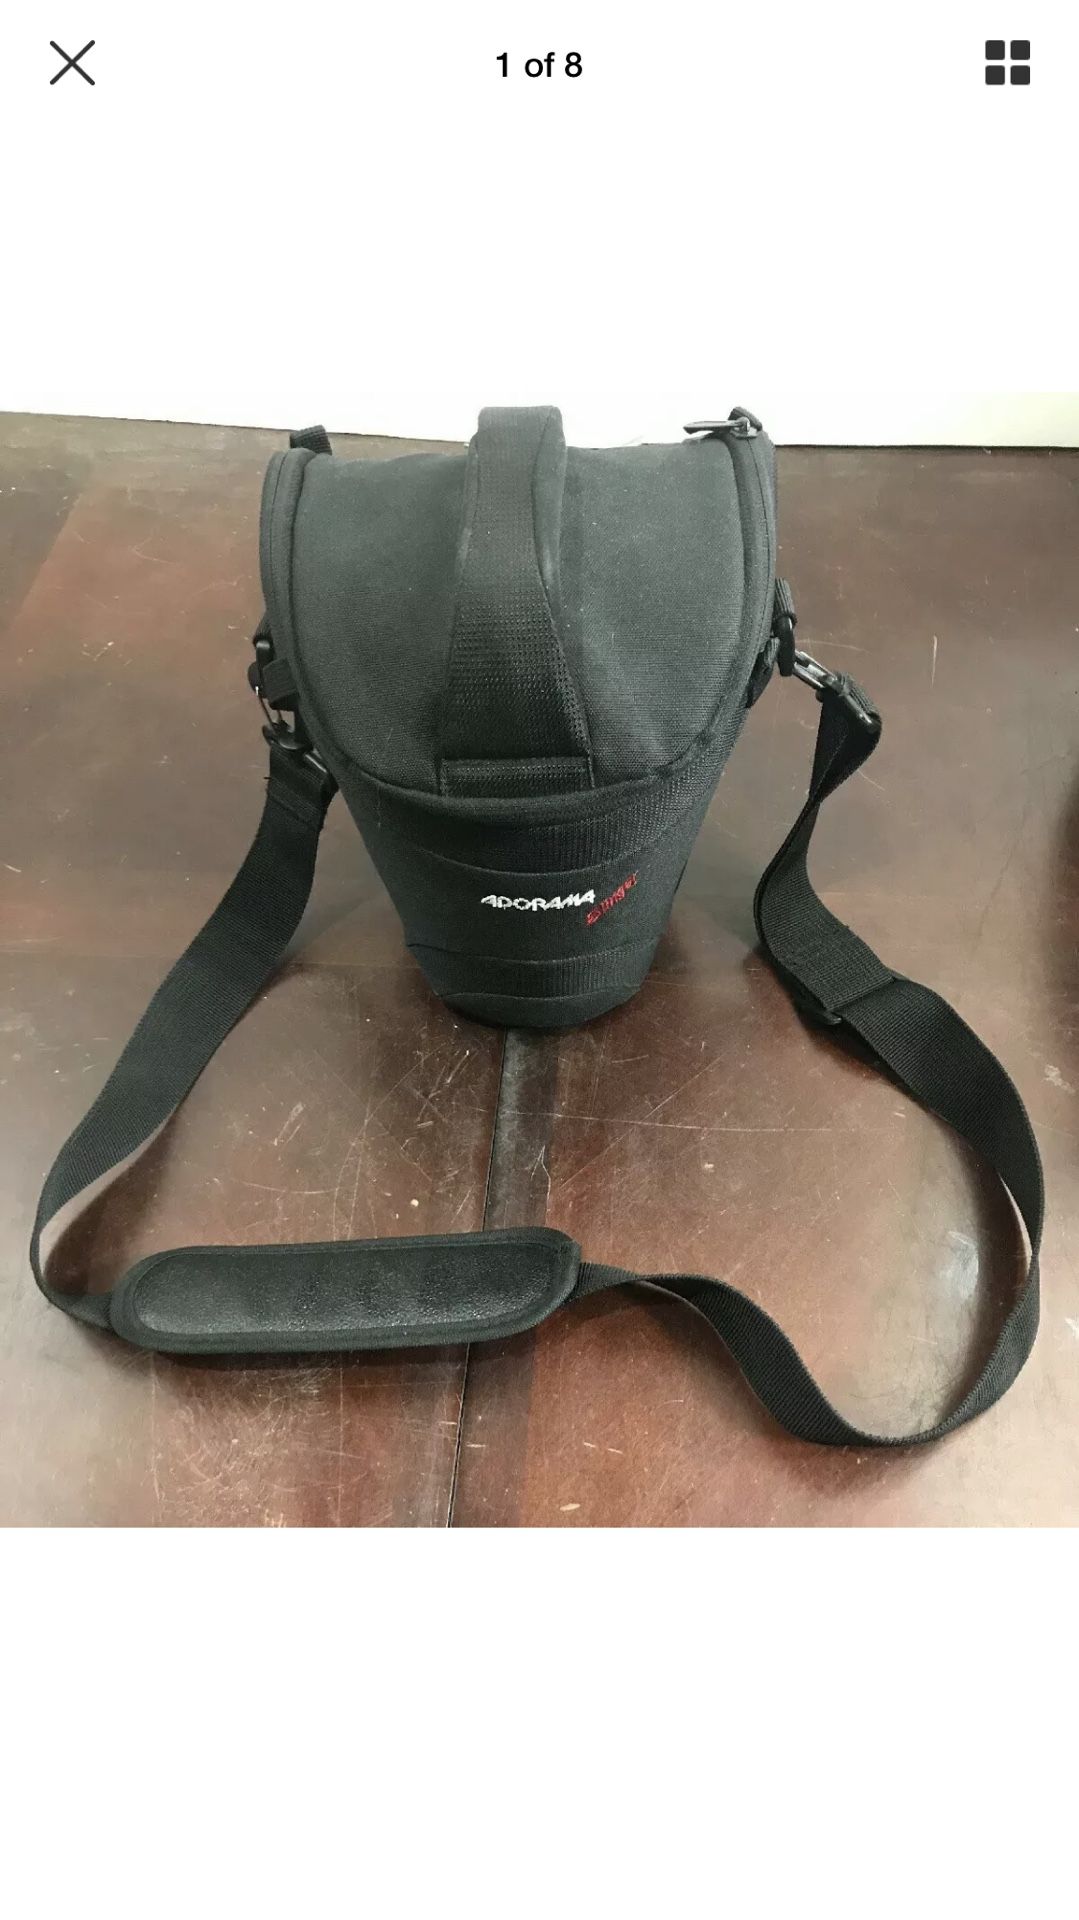 DSLR Camera Bag/Sling